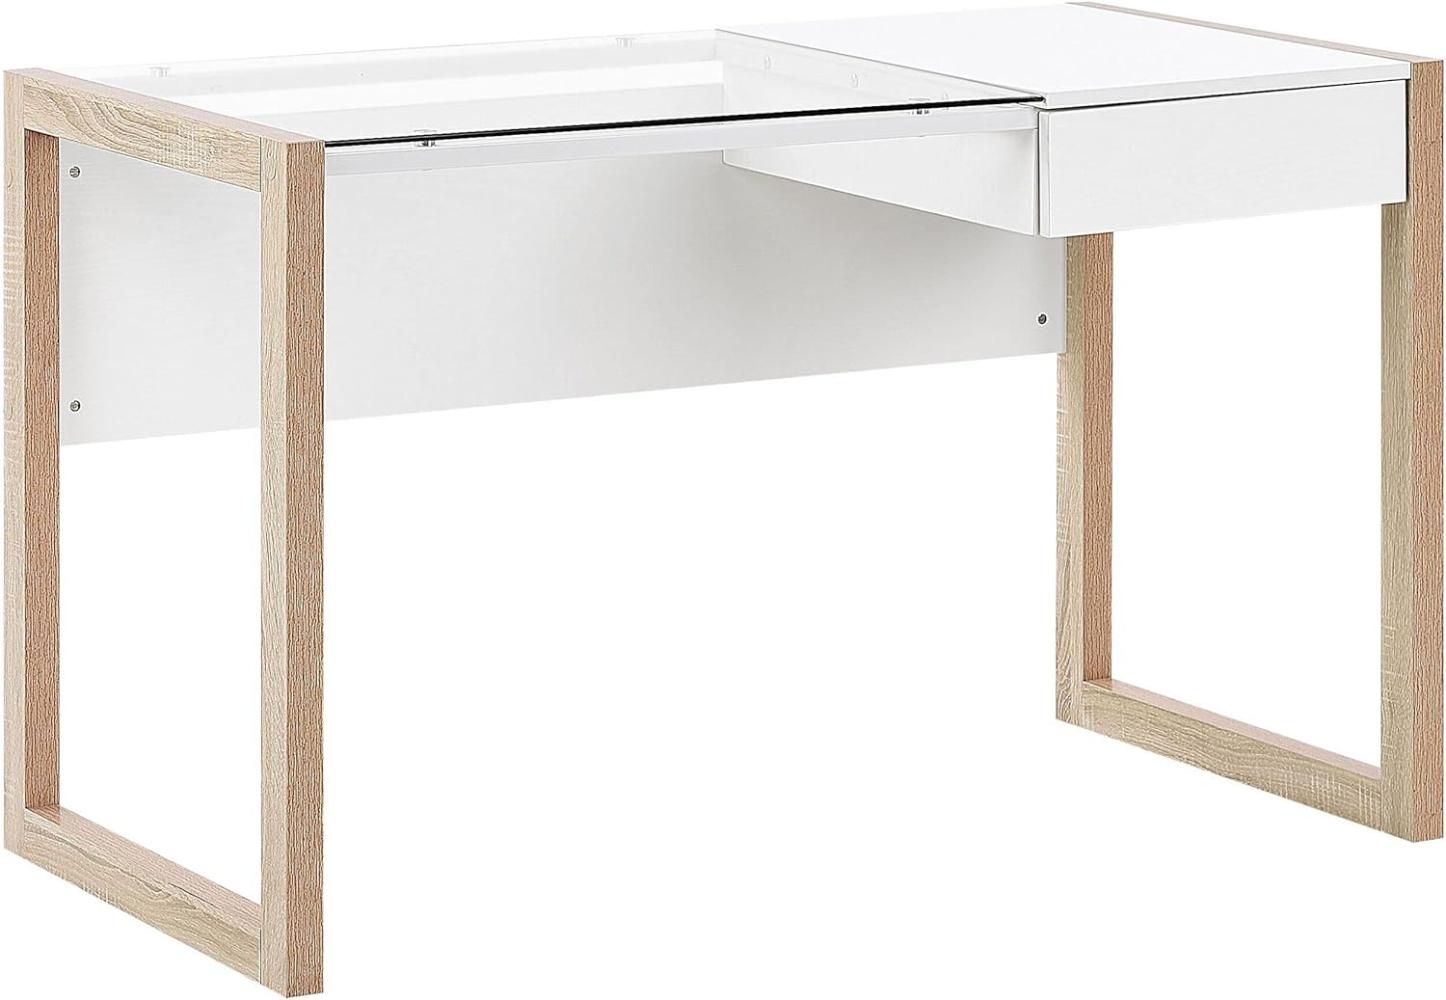 Schreibtisch weiß / heller Holzfarbton 120 x 60 cm JENKS Bild 1